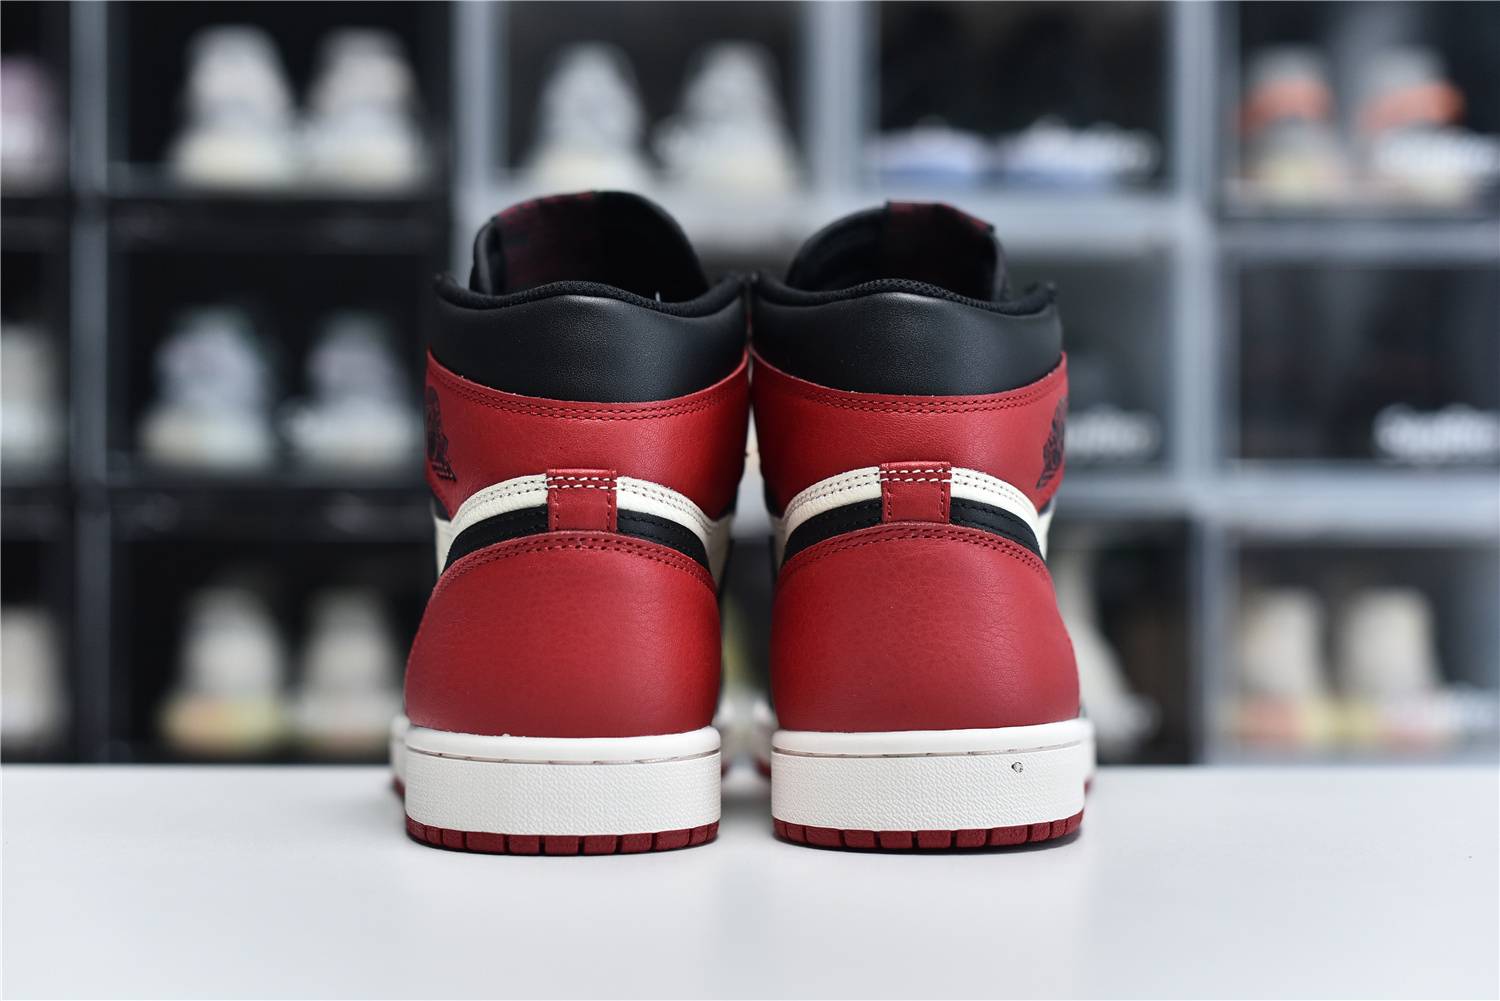 Nike Air Jordan 1 Retro High Og Red Black White Men Sneakers 555088 610 Kickbulk 4 - www.kickbulk.cc